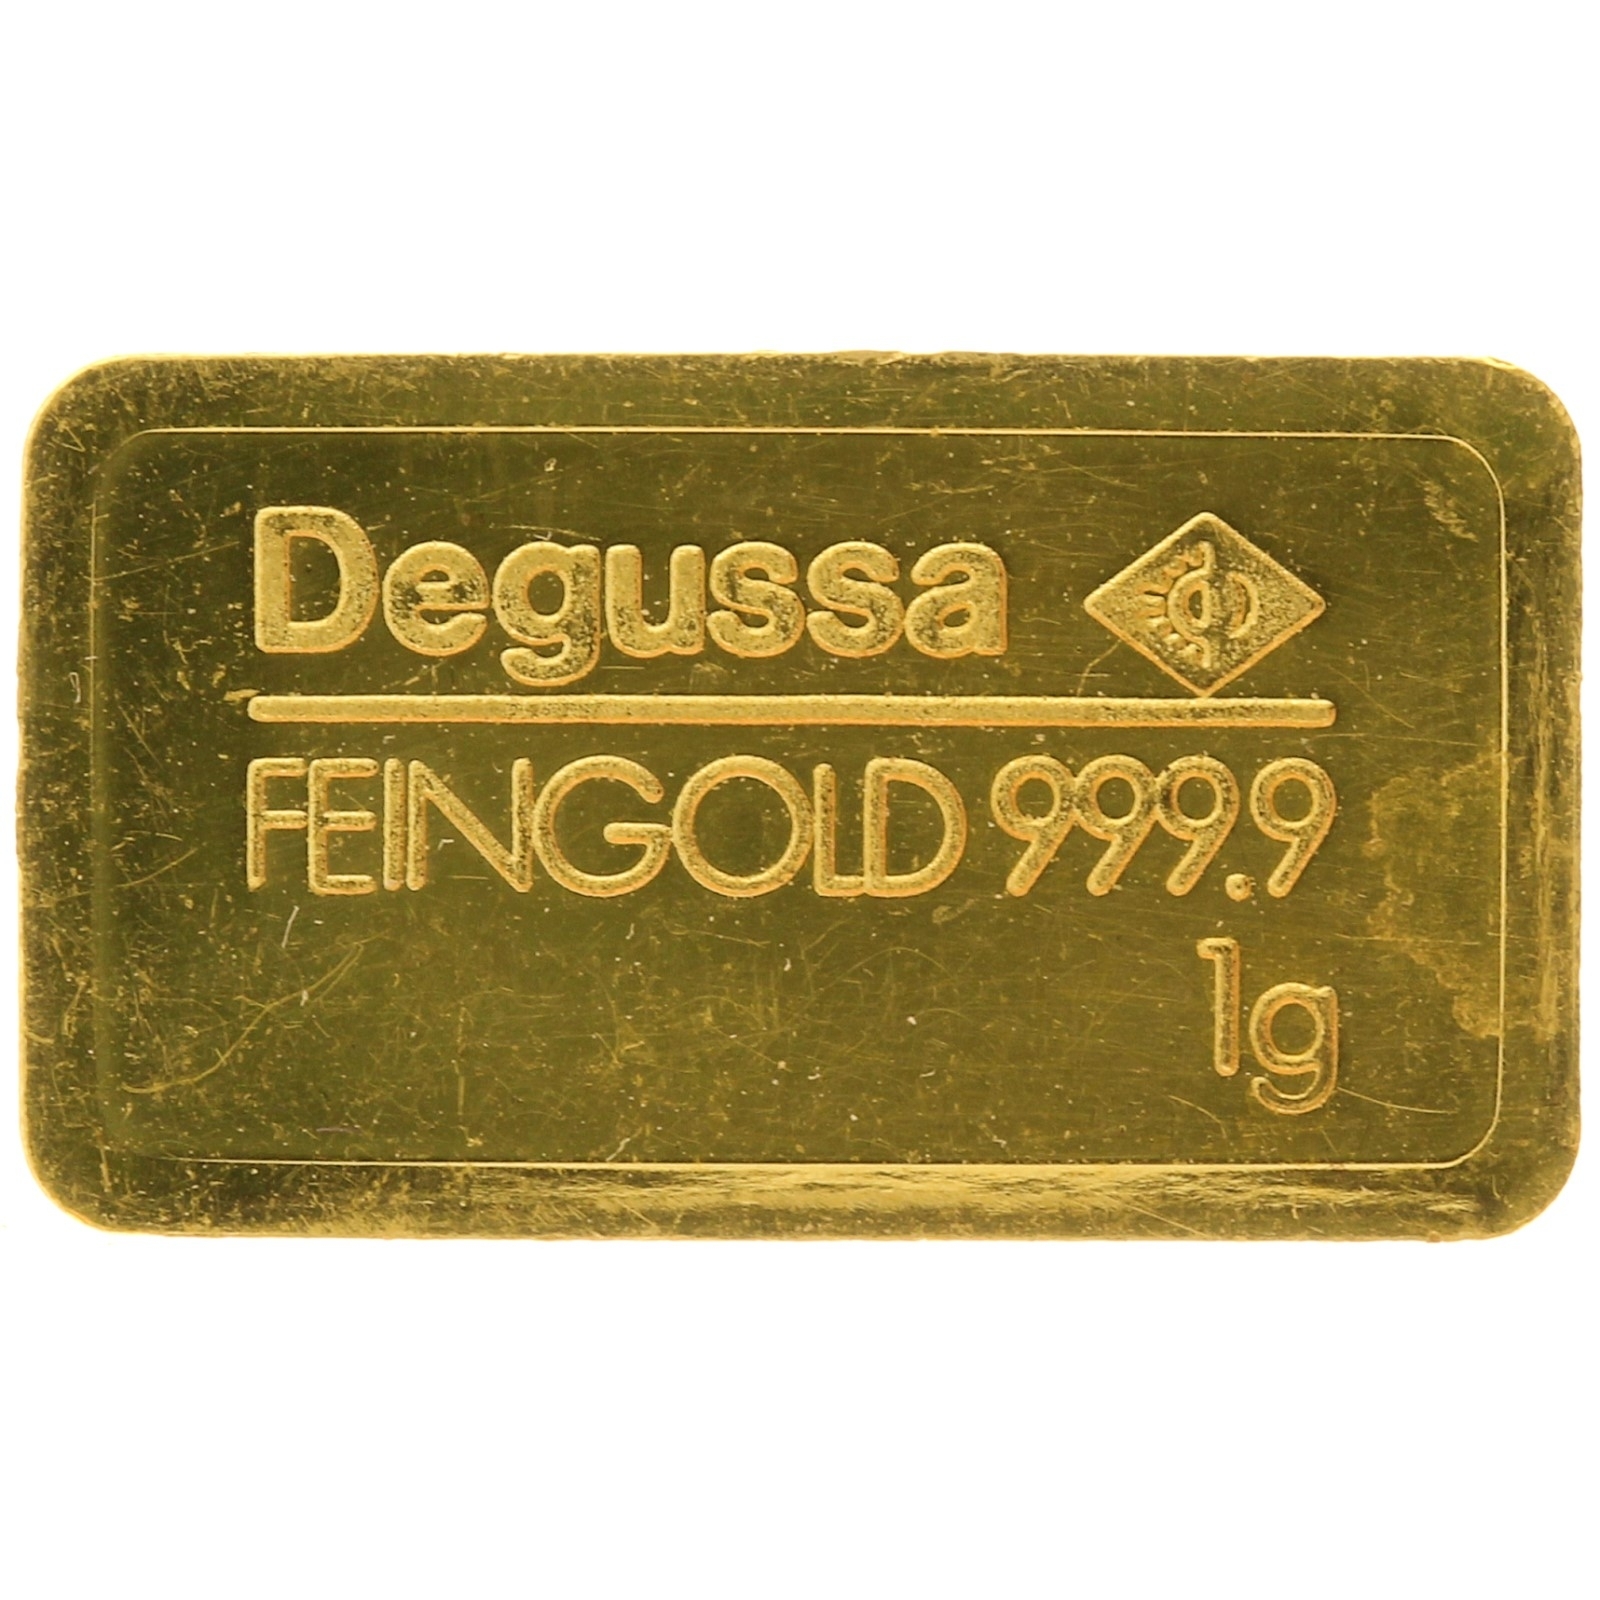 Degussa - 1 gram fine gold - bar 